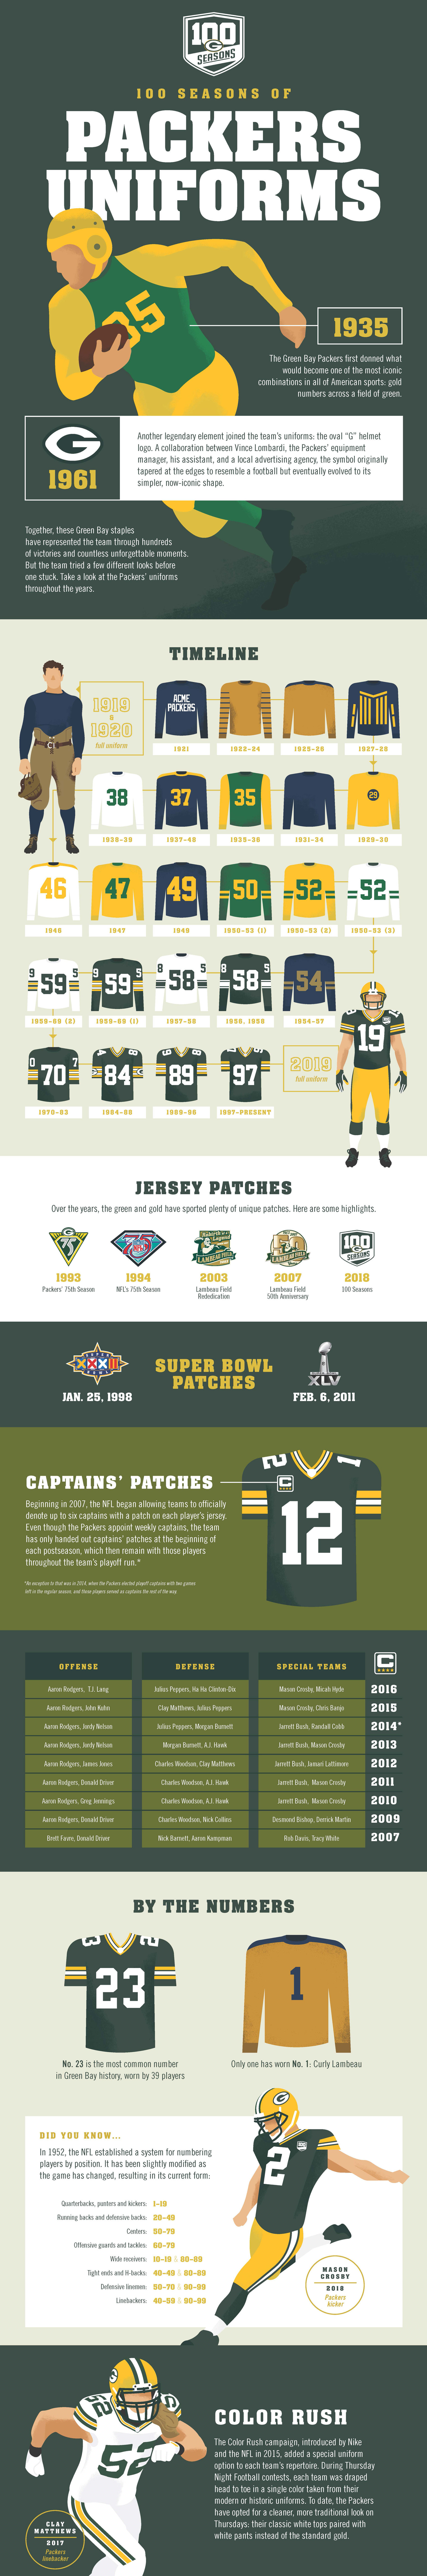 100 Seasons of Packers Uniforms